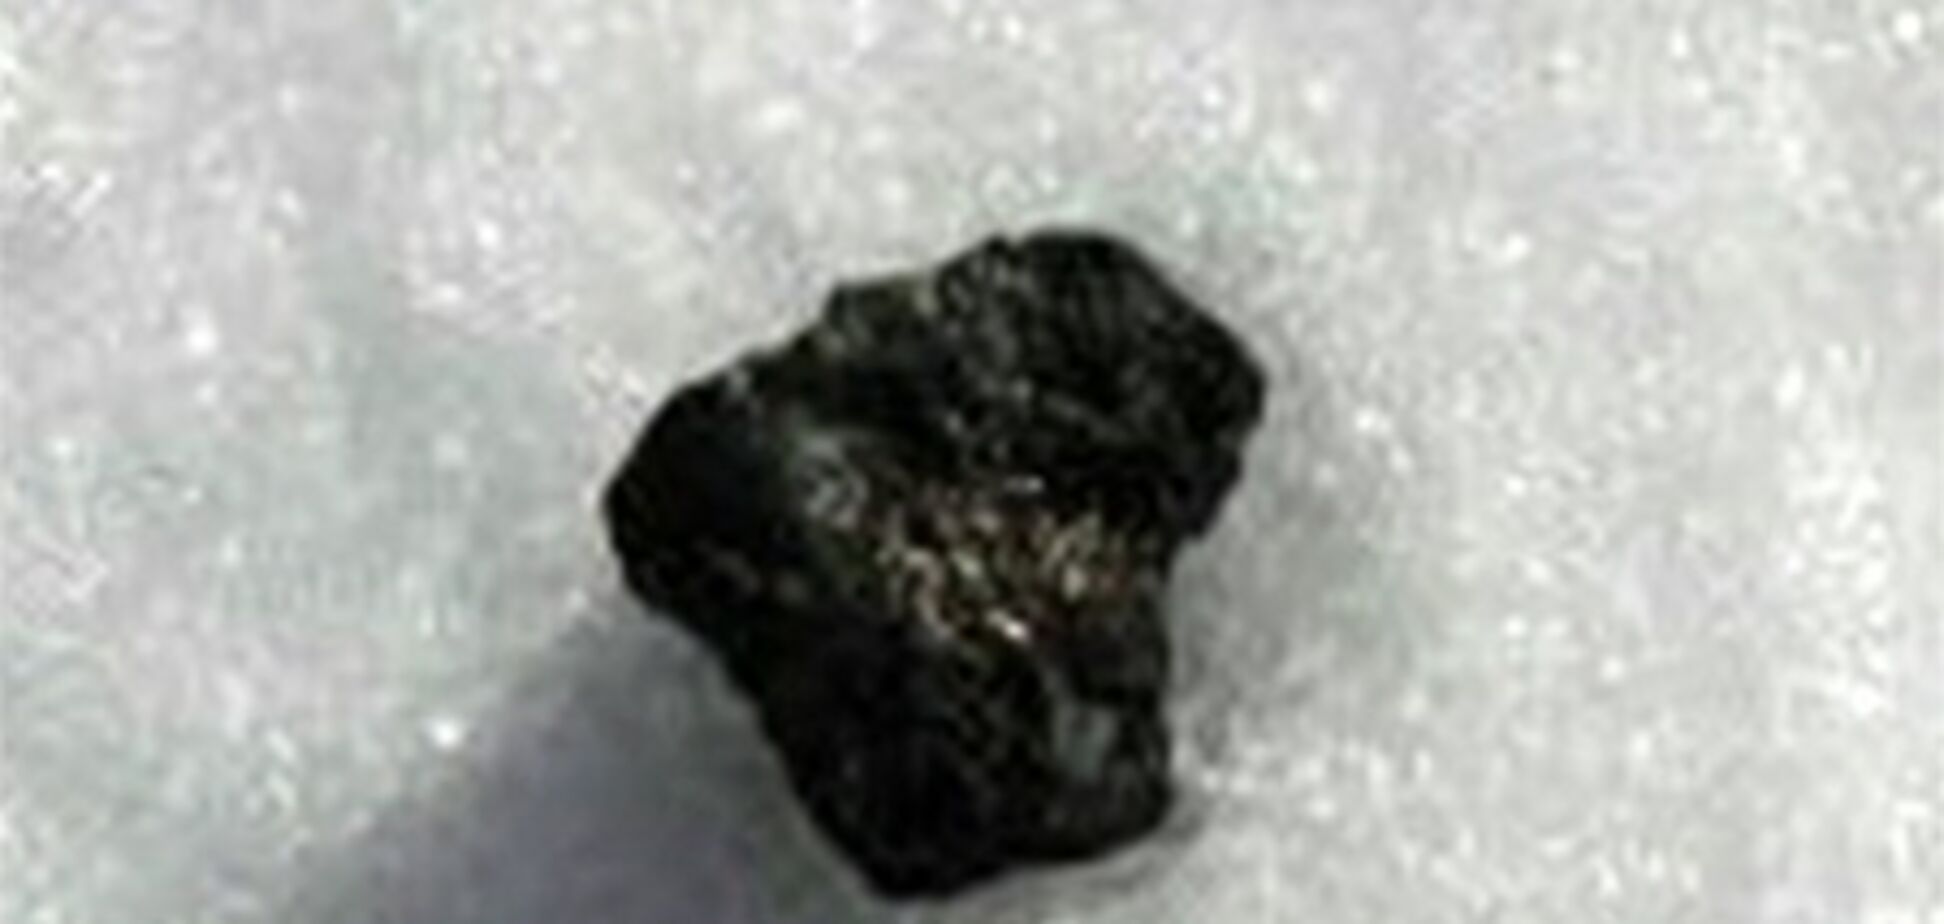 У Росії продають уламок метеорита за 500 000 рублів. Відео